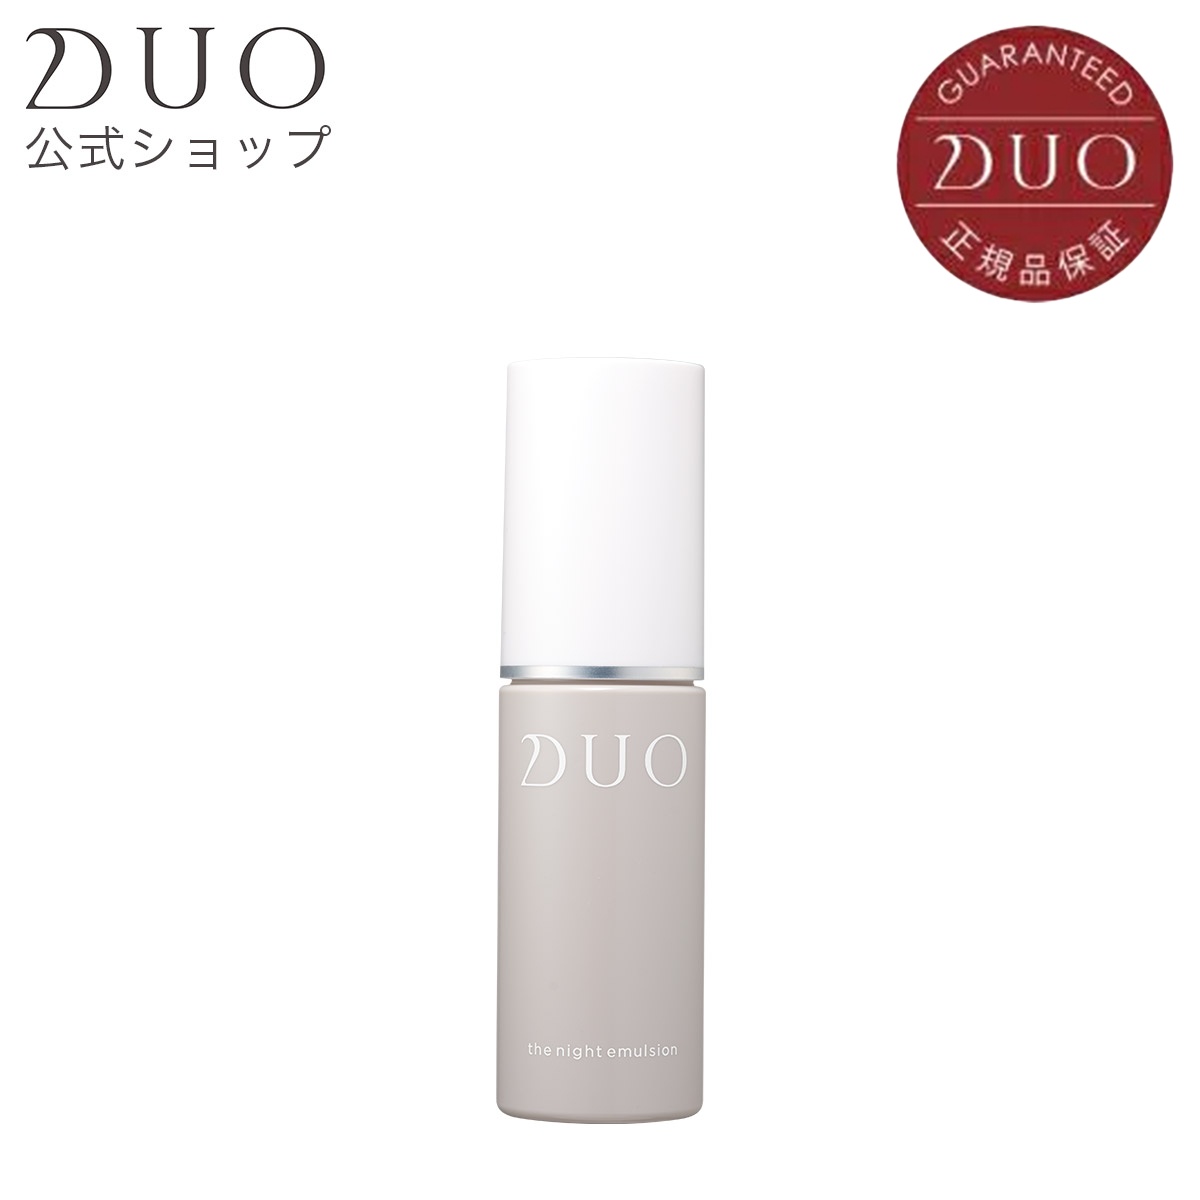 DUO公式 ザナイトエマルジョン 50代 40代 保湿 極潤 白潤 ハリ 弾力 エイジングケア コンディショニング 母の日